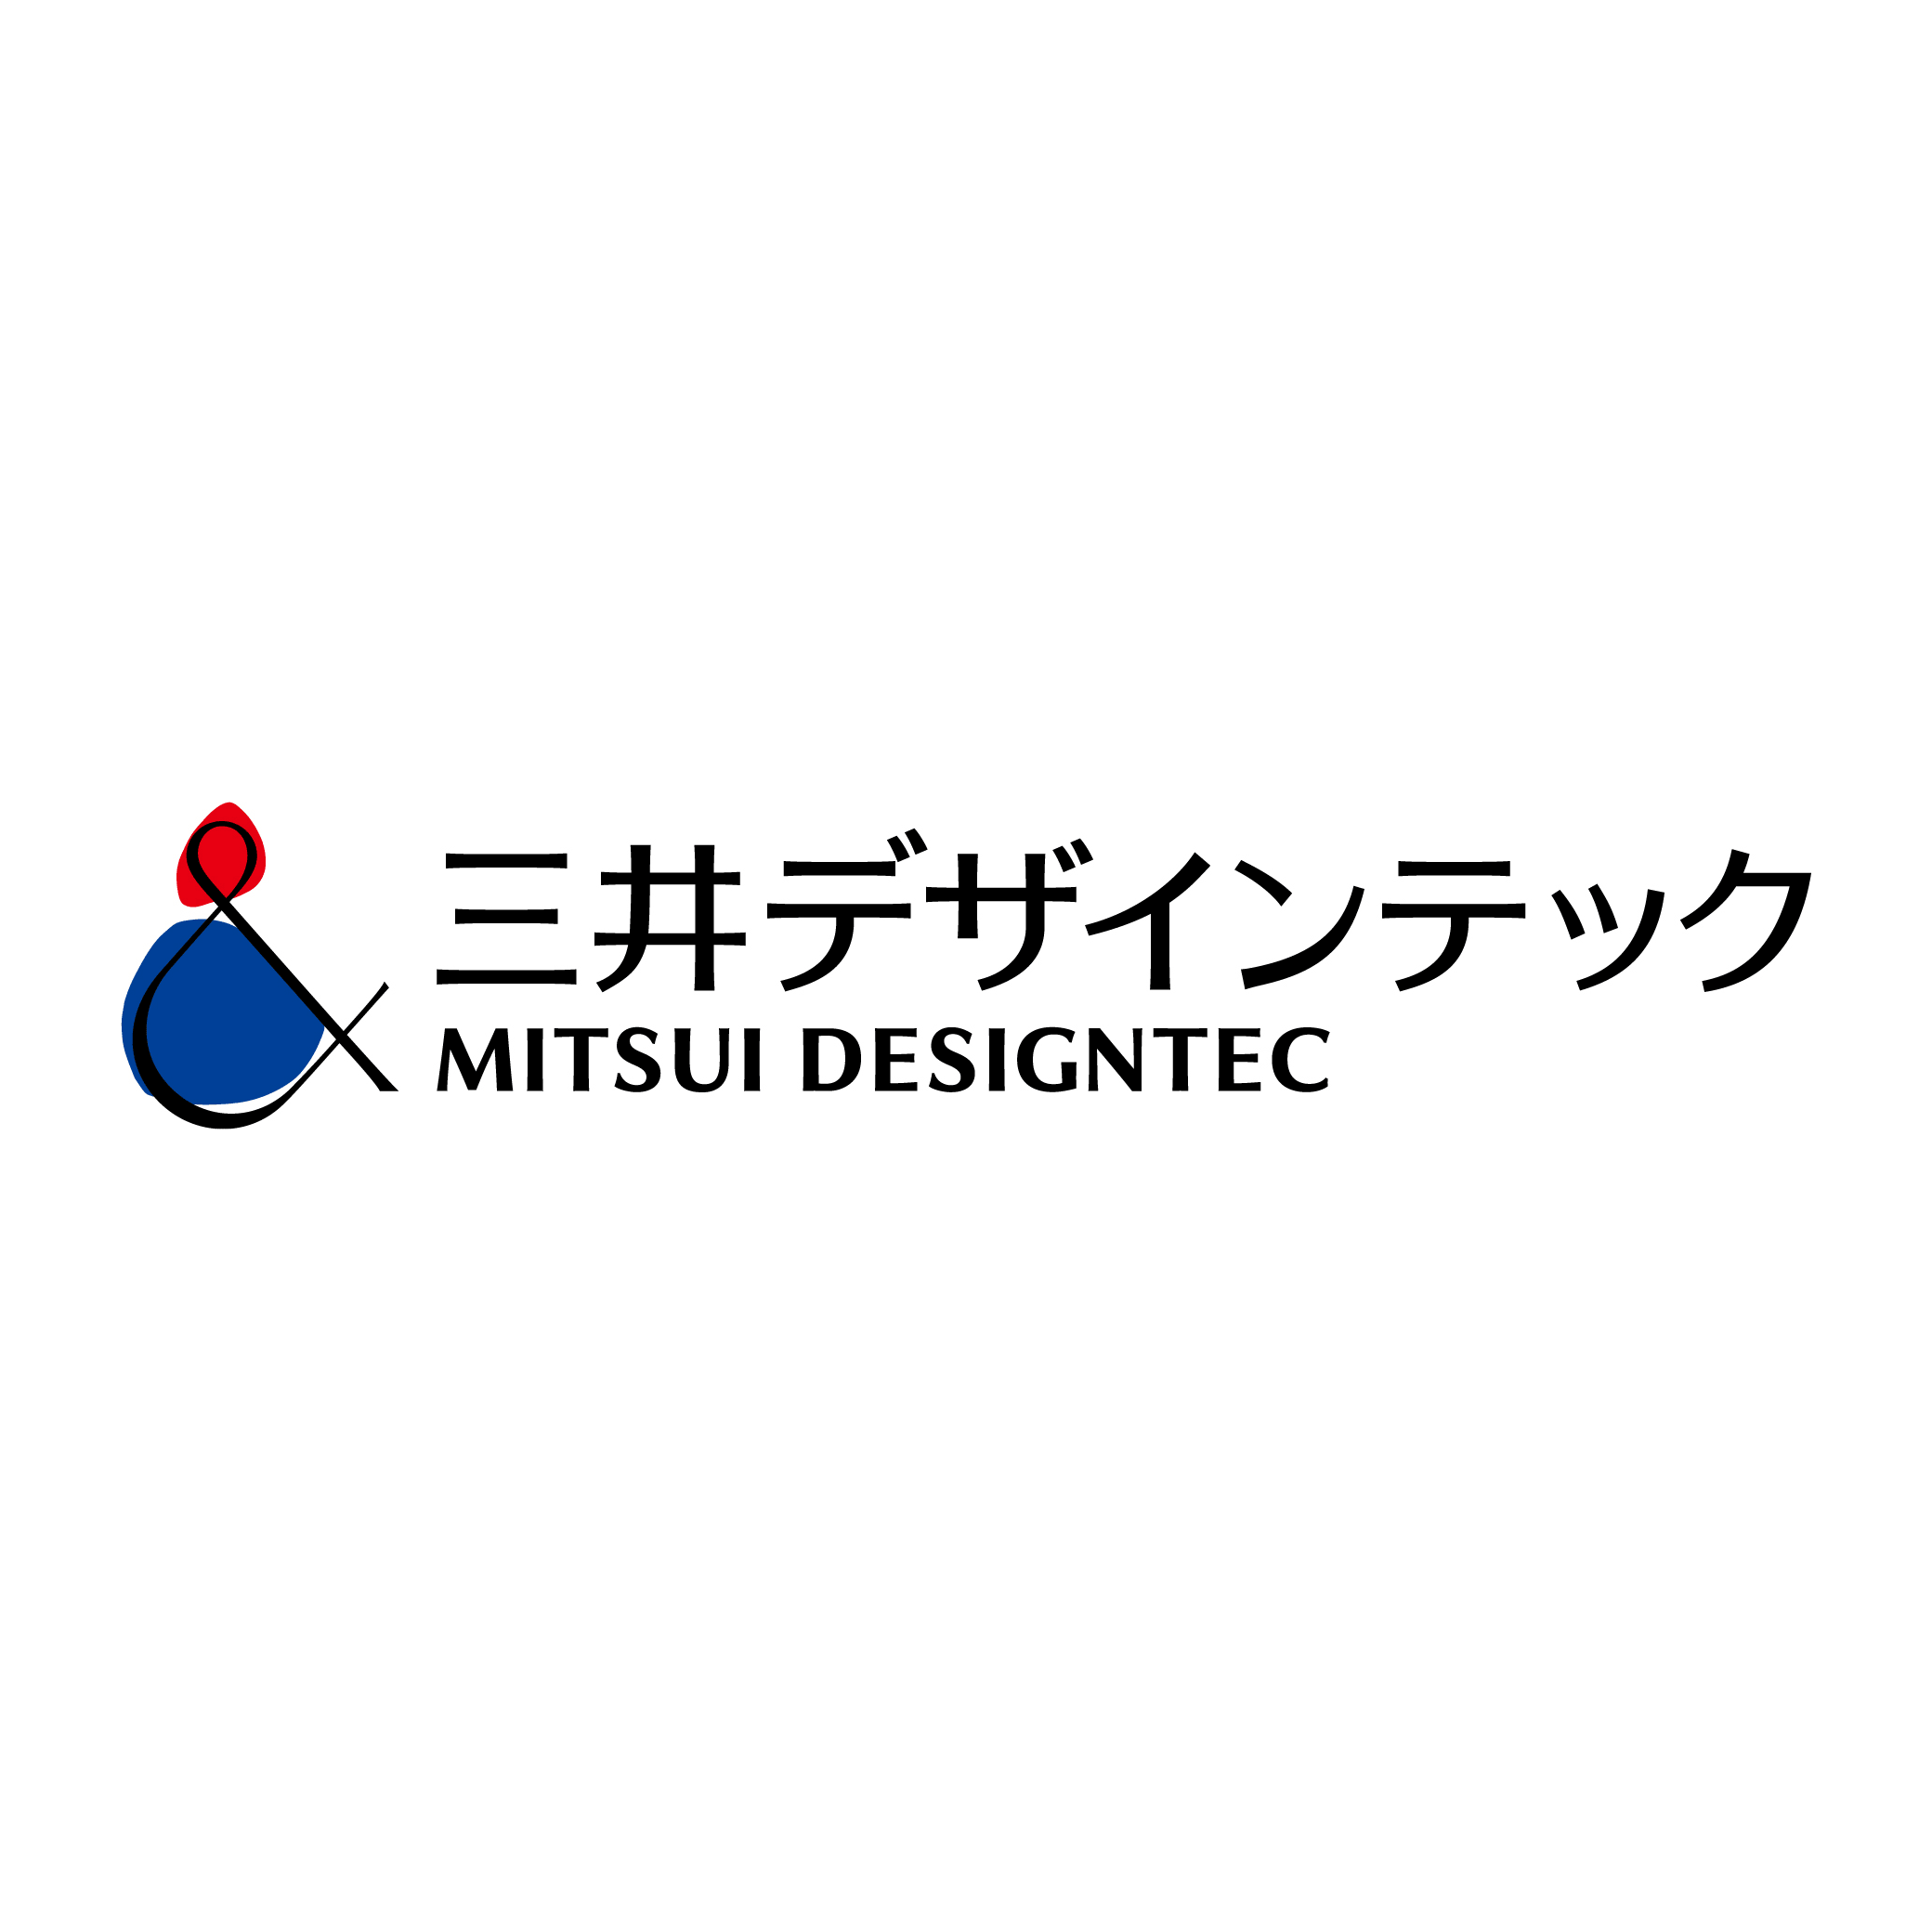 三井デザインテック株式会社のロゴ画像